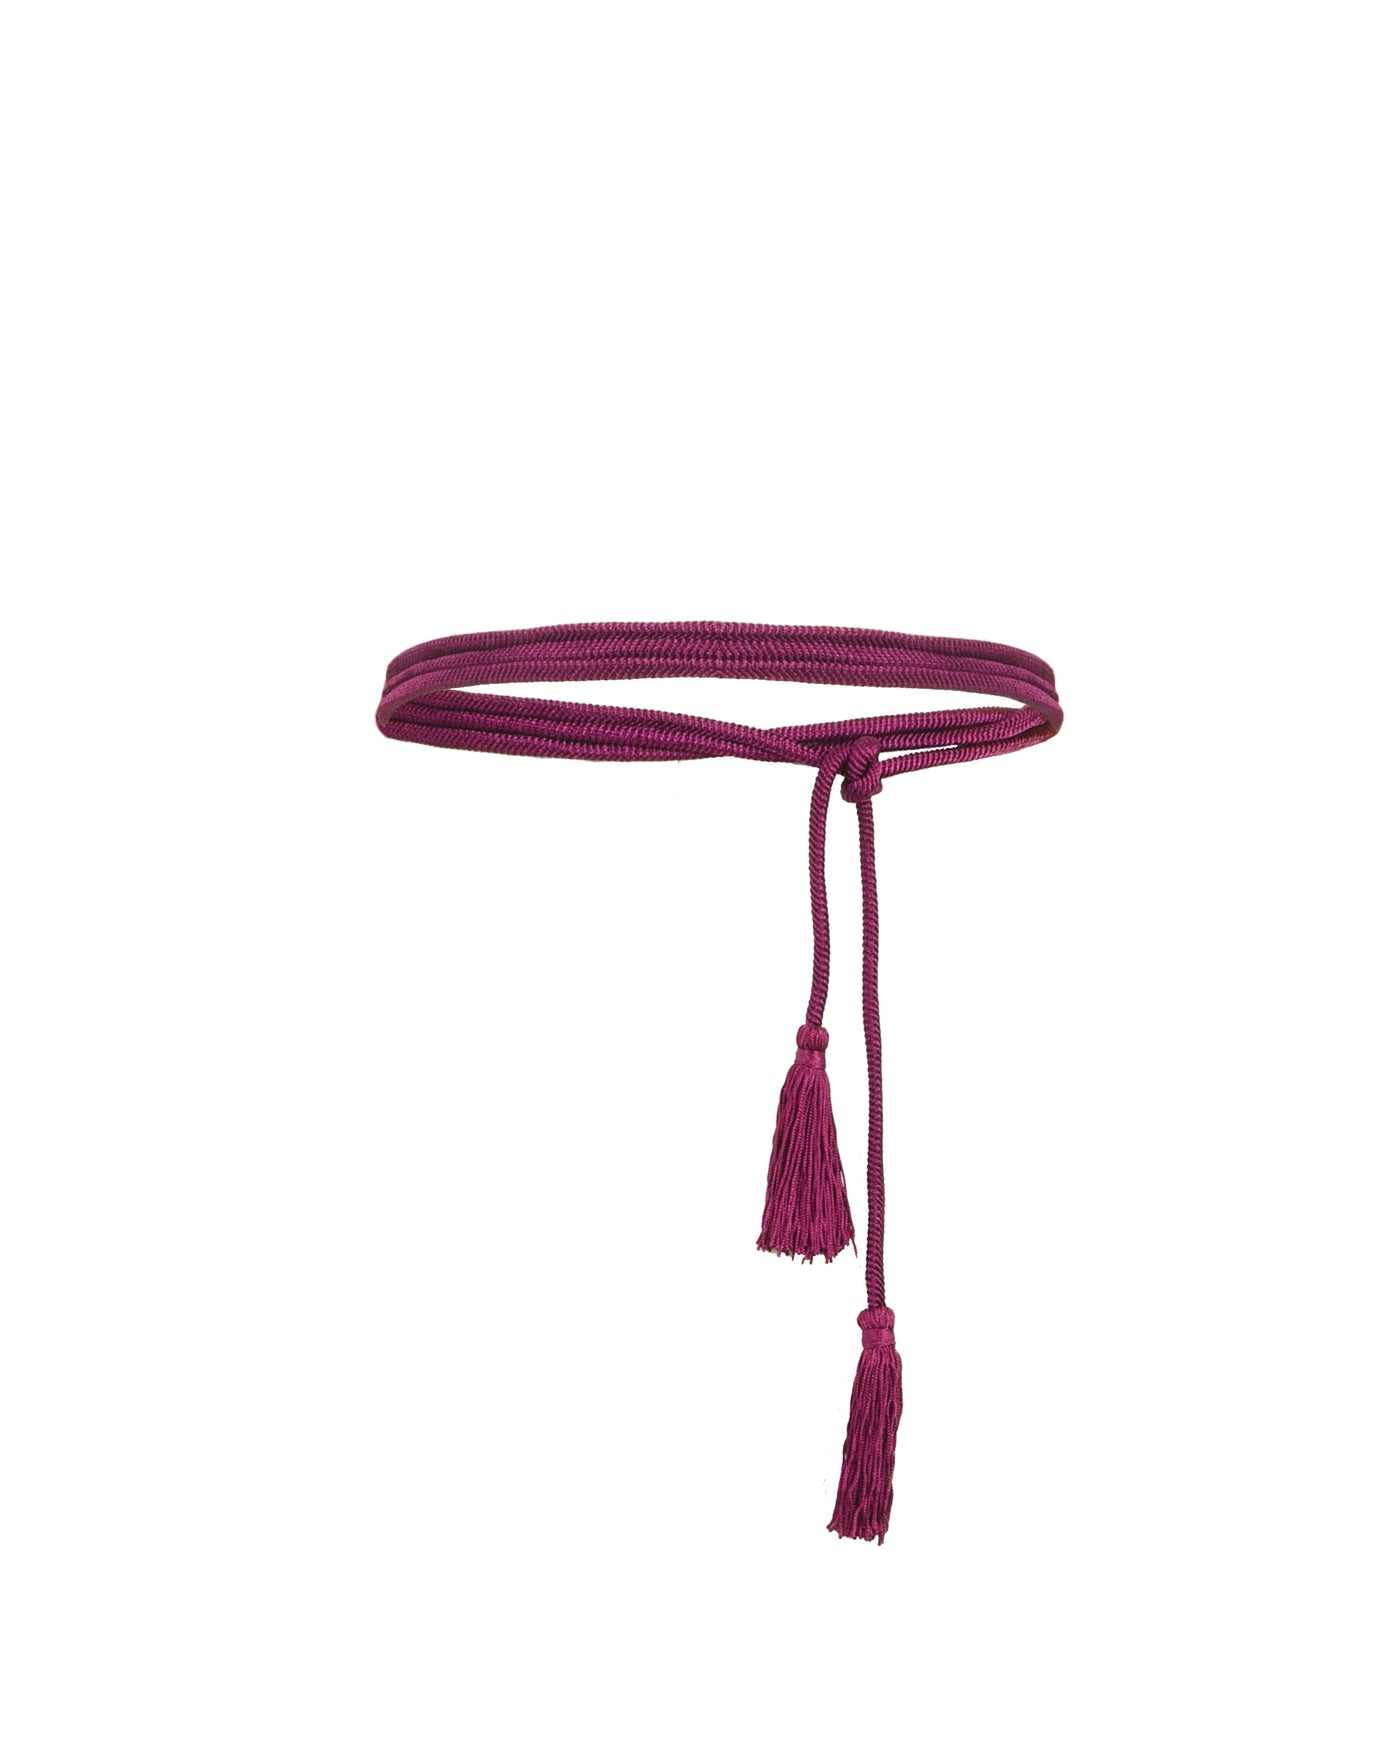 Wraparound Purple Belt With Tassels